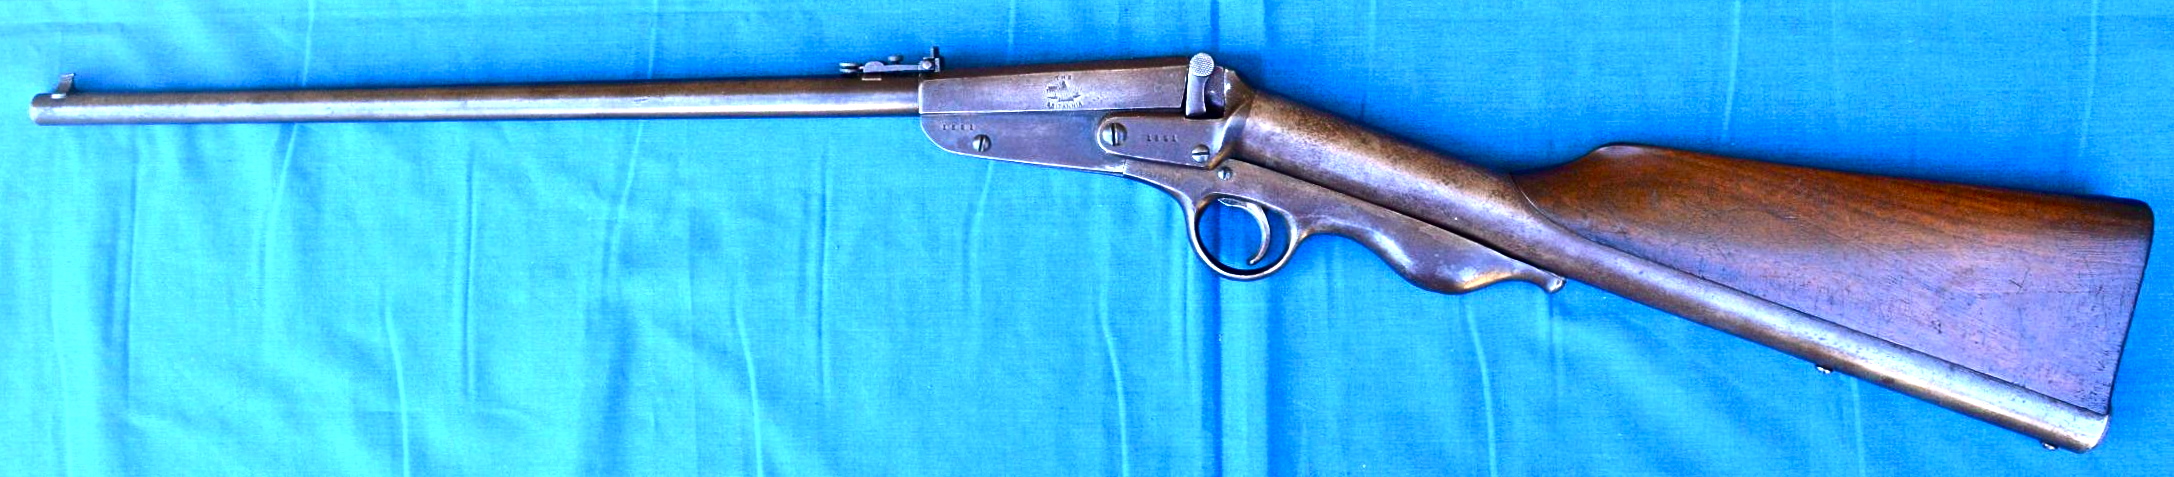 britannia mk1 air rifle